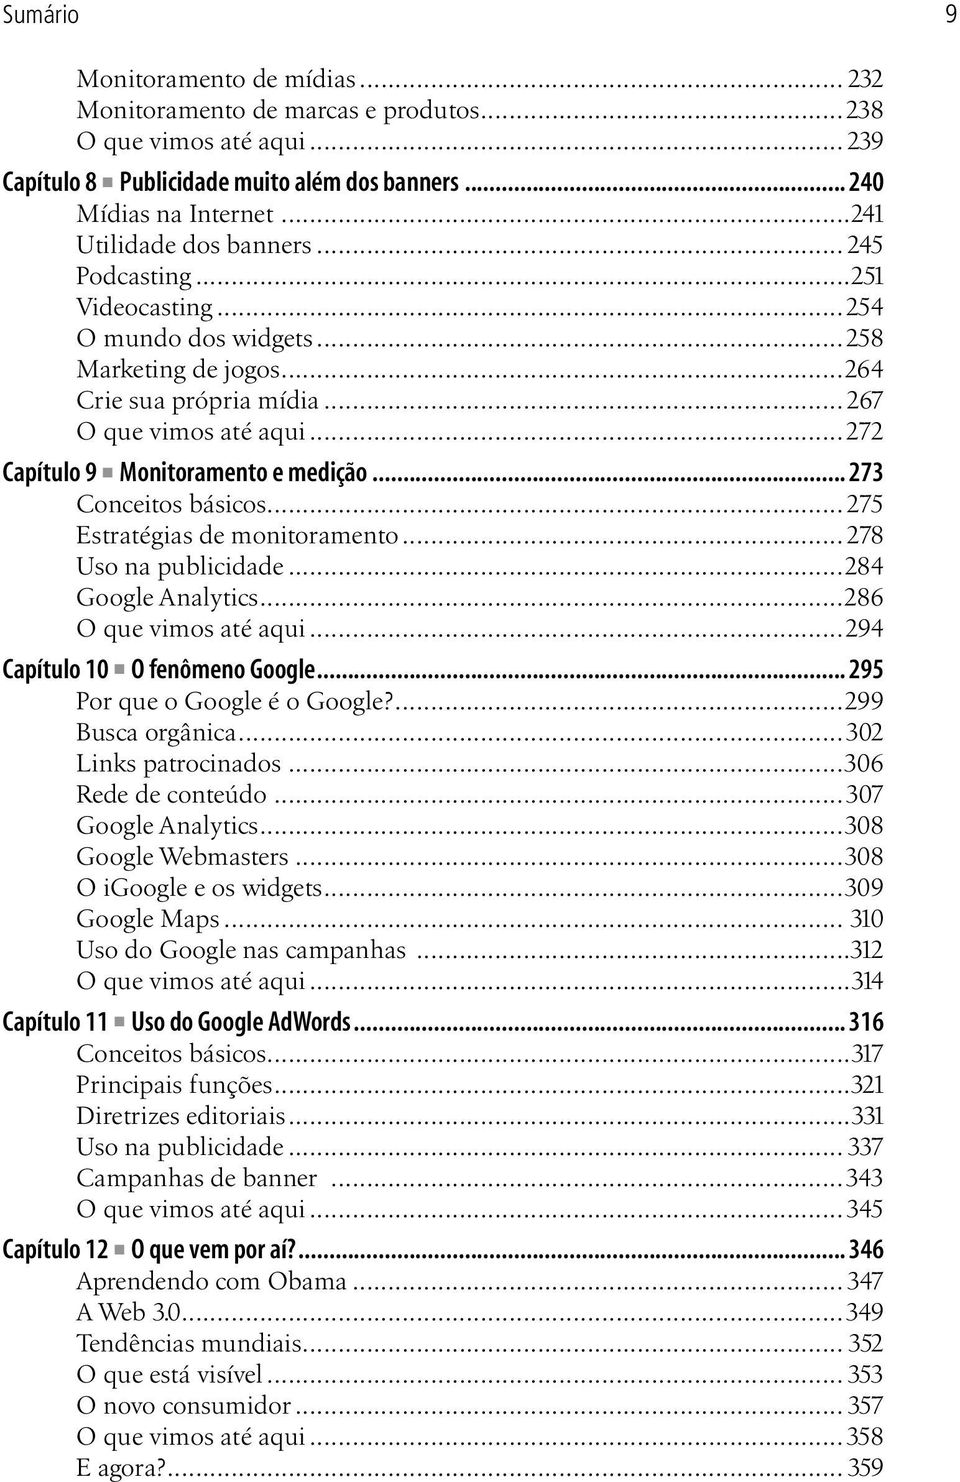 ..272 Capítulo 9 Monitoramento e medição... 273 Conceitos básicos... 275 Estratégias de monitoramento...278 Uso na publicidade...284 Google Analytics...286 O que vimos até aqui.